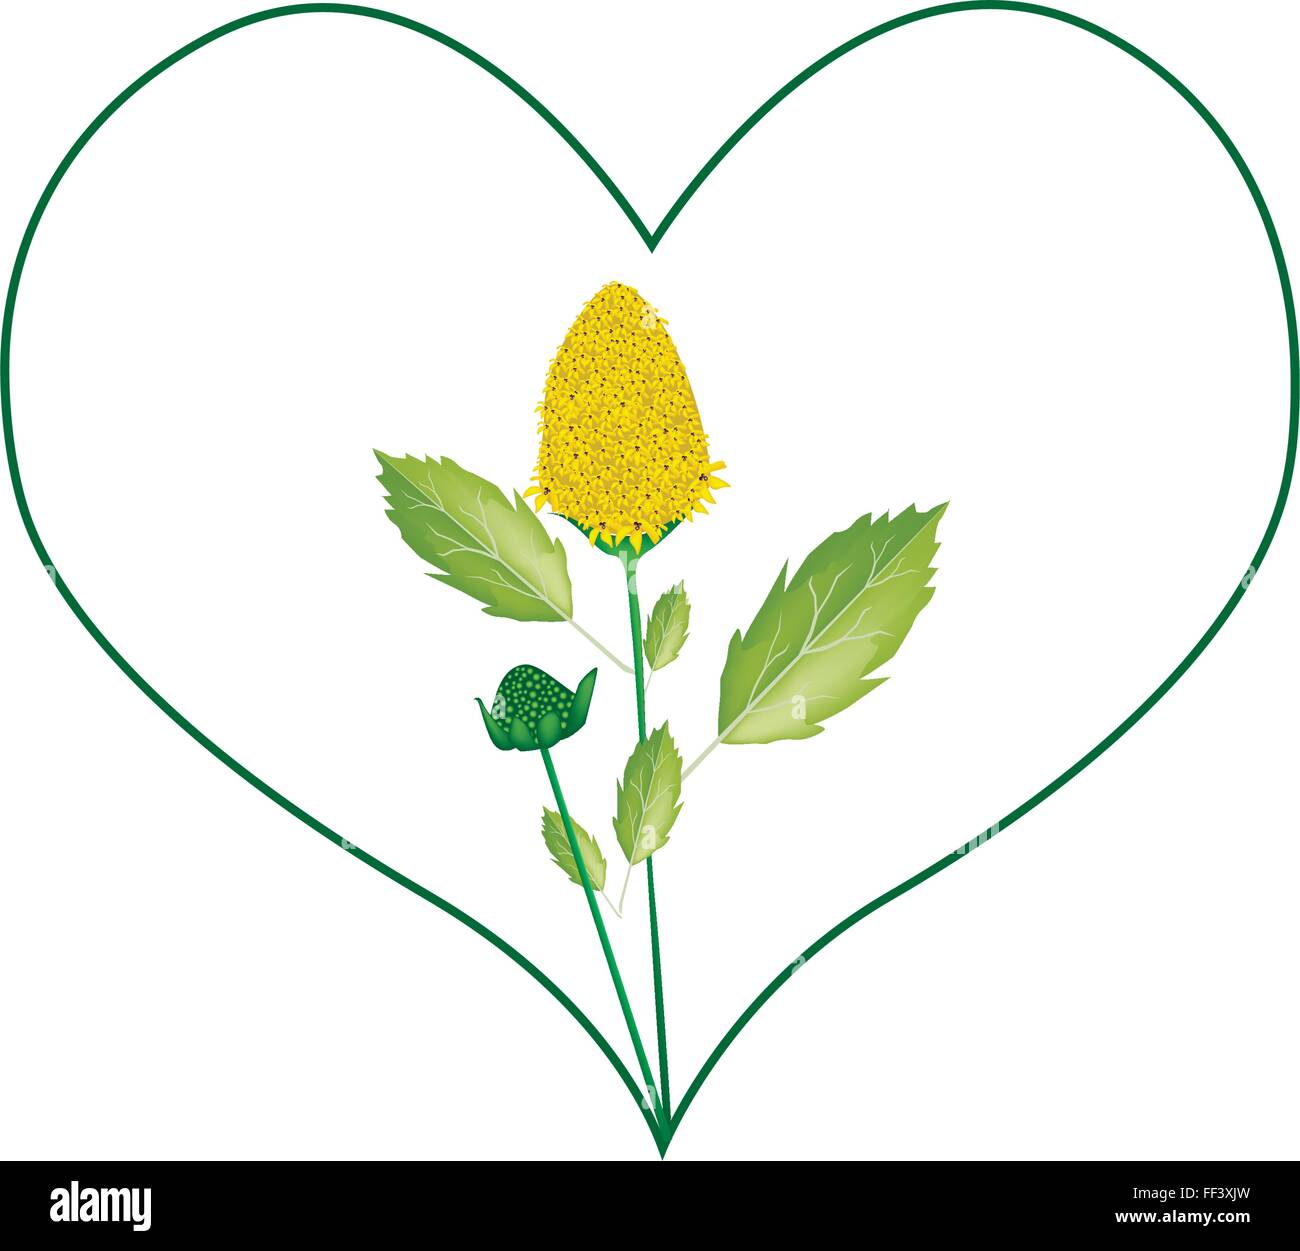 Liebe Konzept, Illustration von gelben Parakresse Blumen in Herzform bilden Isolated on White Background. Stock Vektor